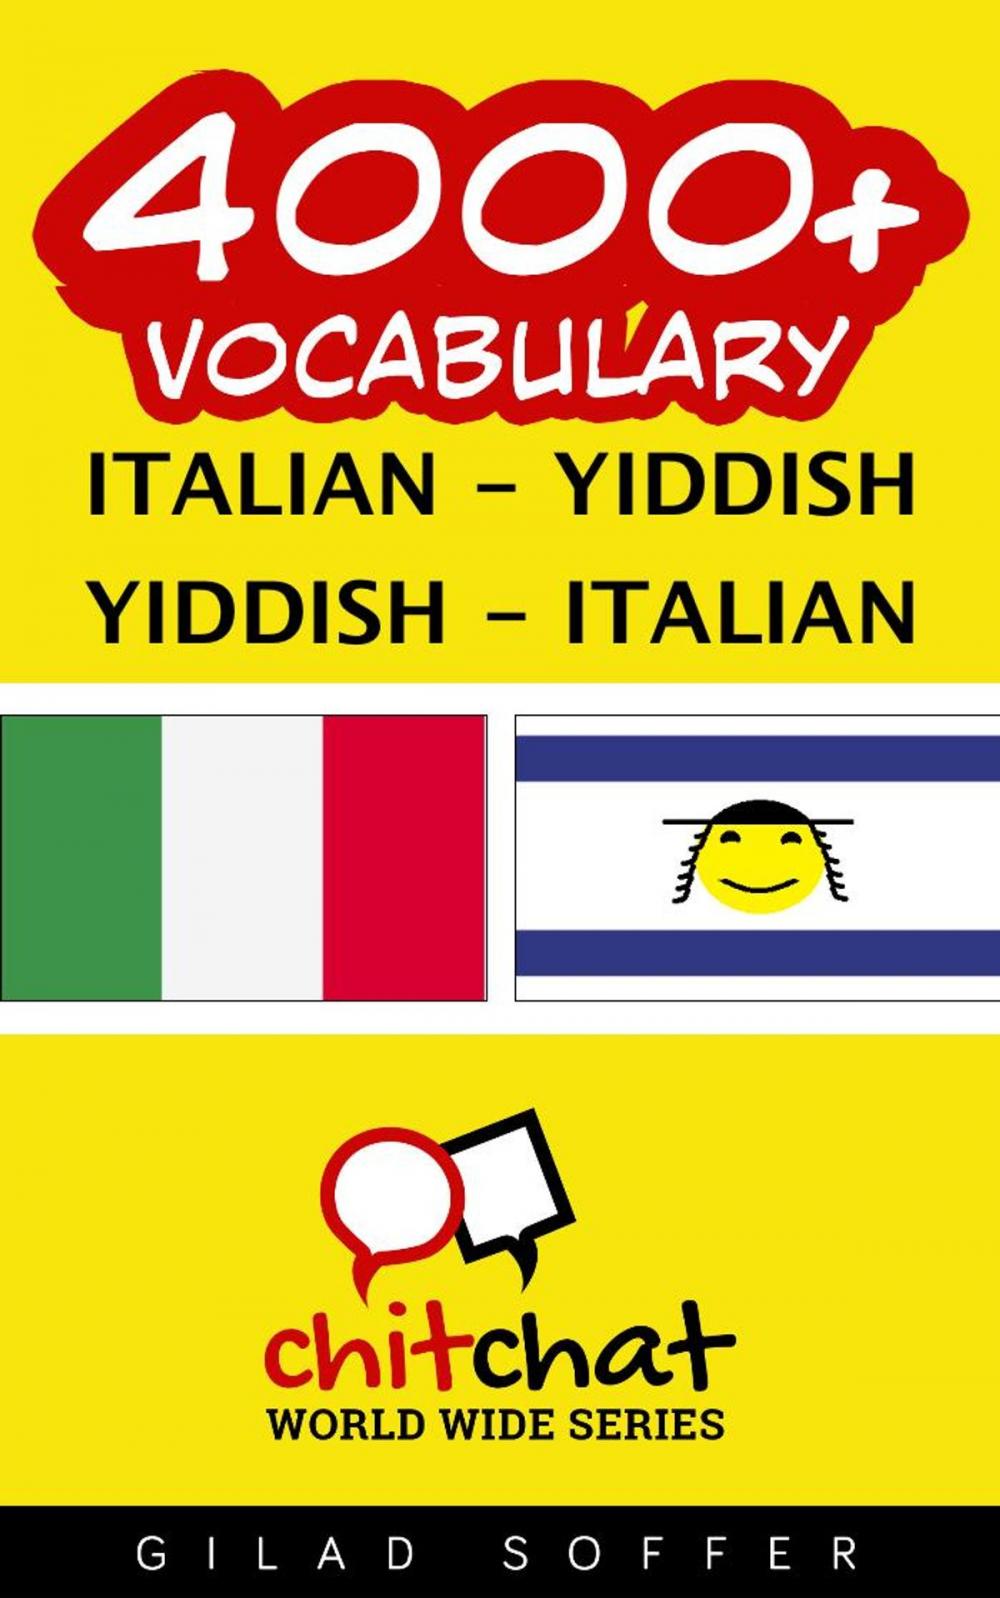 Big bigCover of 4000+ Vocabulary Italian - Yiddish